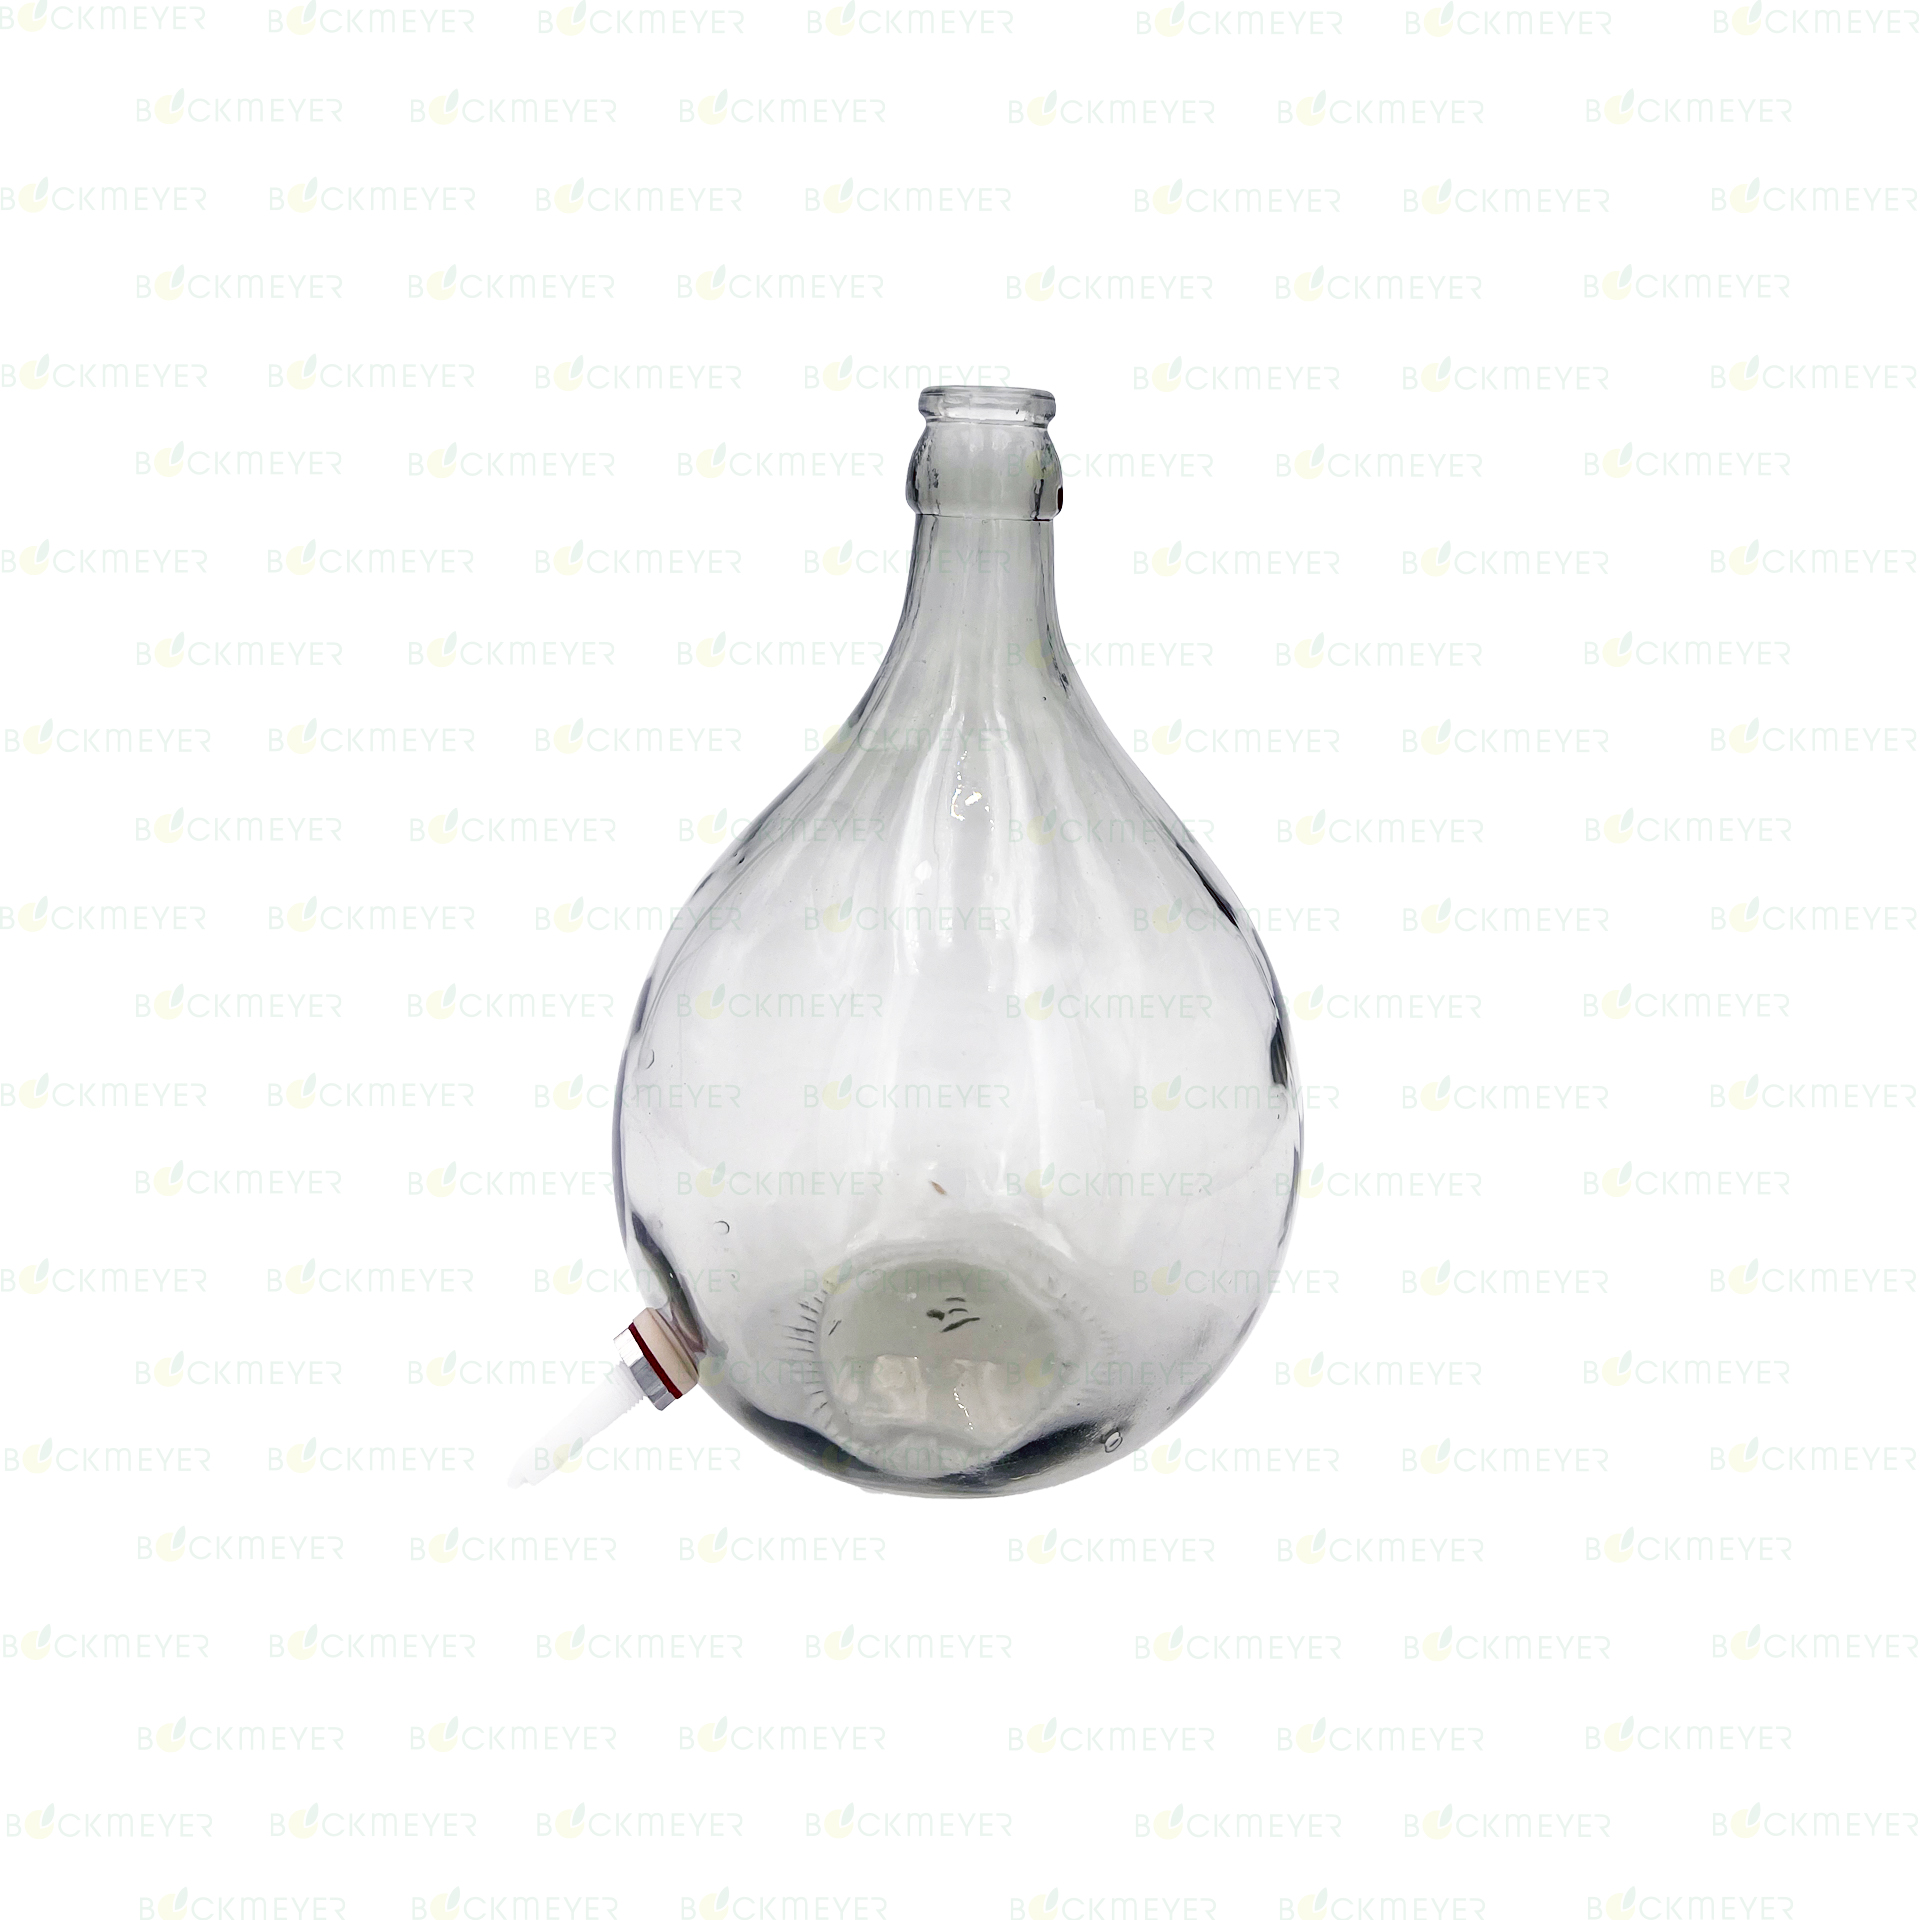 Glasballon 54,0 Liter, weiß, mit Kunststoff-Ablaß (OHNE VERSCHLUSS)